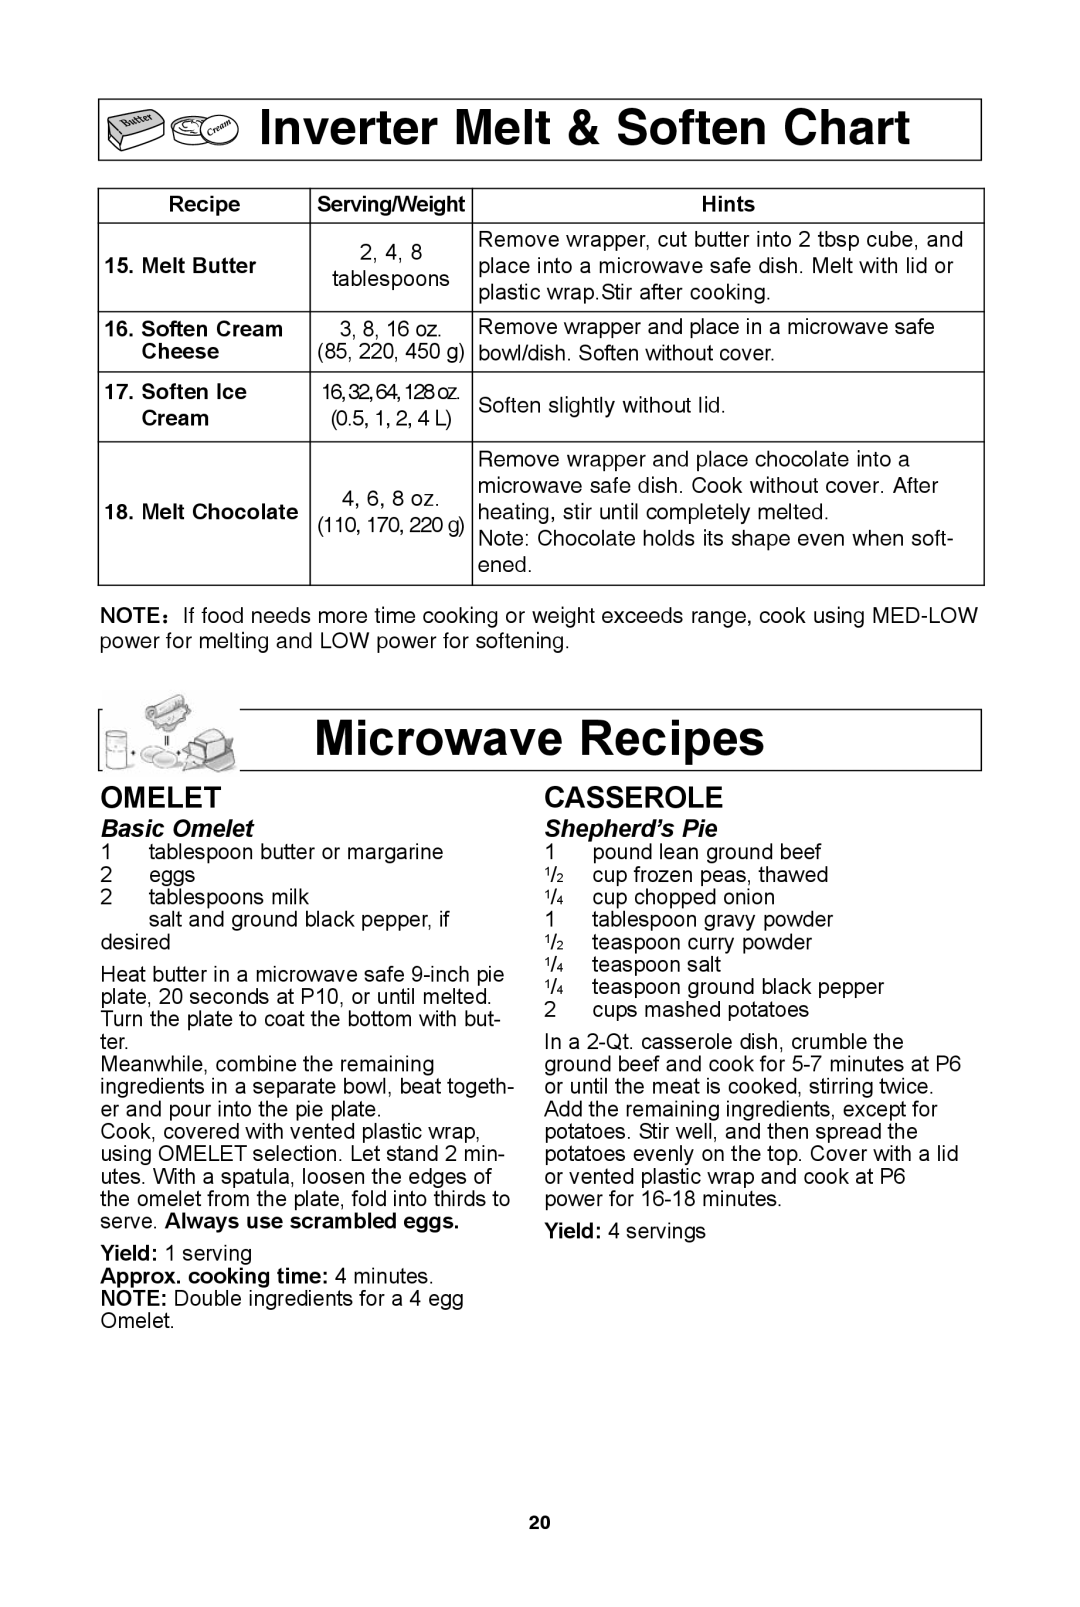 Panasonic NN-SD681S inverter Melt & soften chart, microwave recipes, OmeLeT, caSSerOLe, Basic Omelet, Shepherd’s Pie 